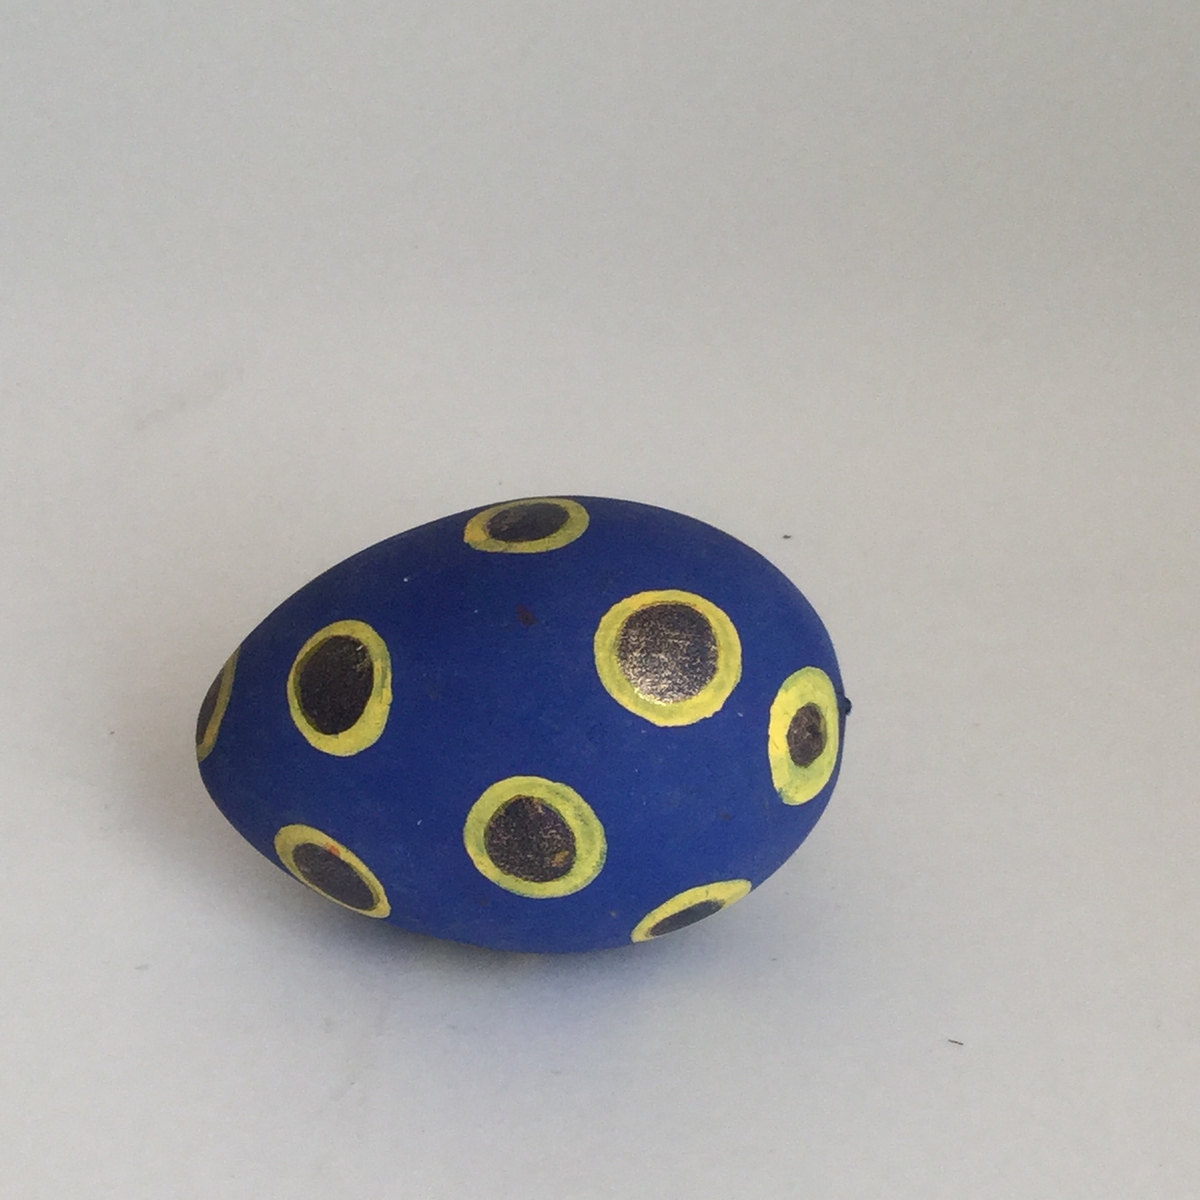 Prydnaden föreställer ett ägg.Ägget är svarvat i trä och är målat med prickar i gult och guld på blå botten.Höjd 70 mm, bredd 43 mm.